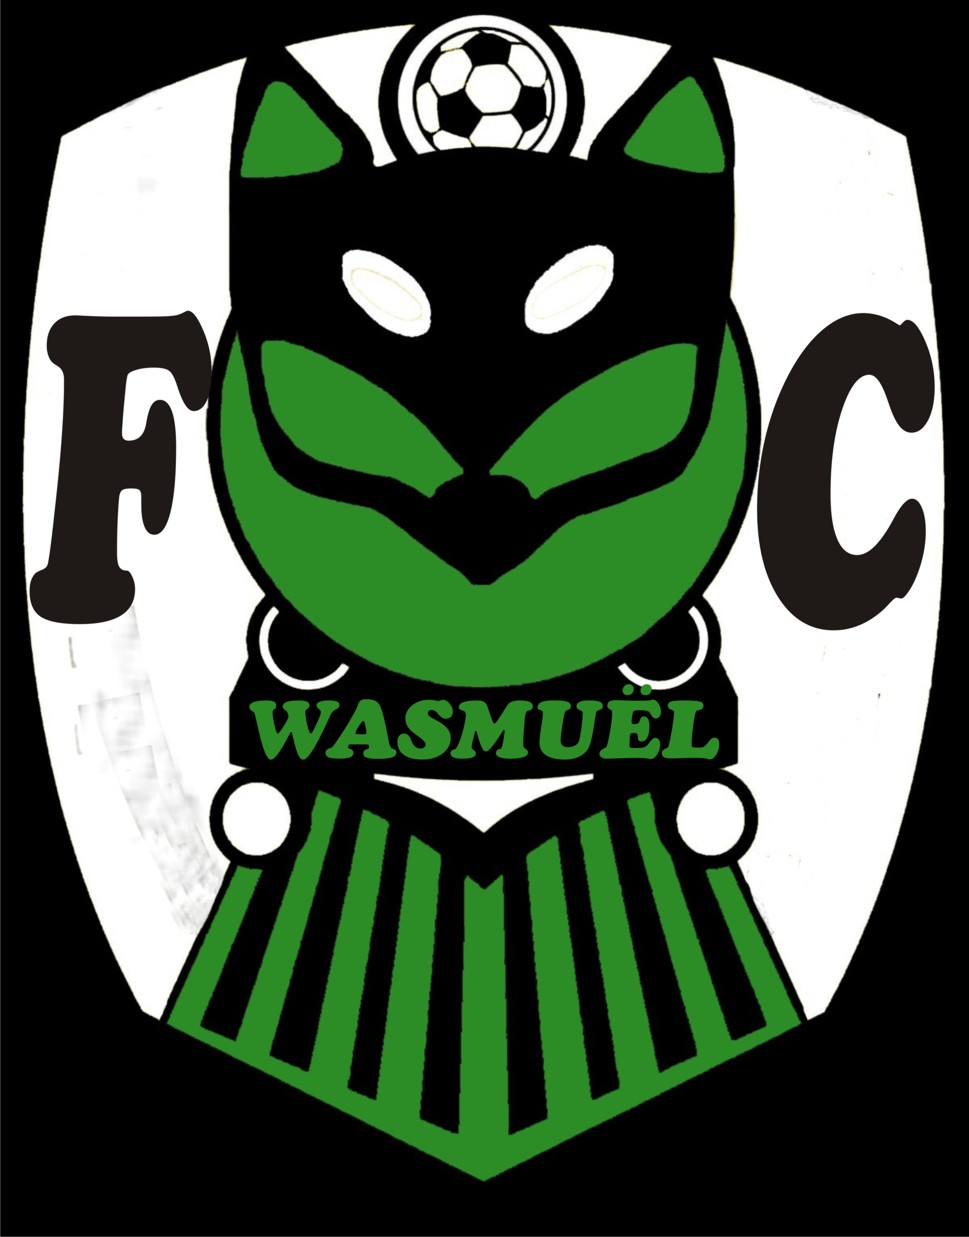 5 - Football Club Wasmuel